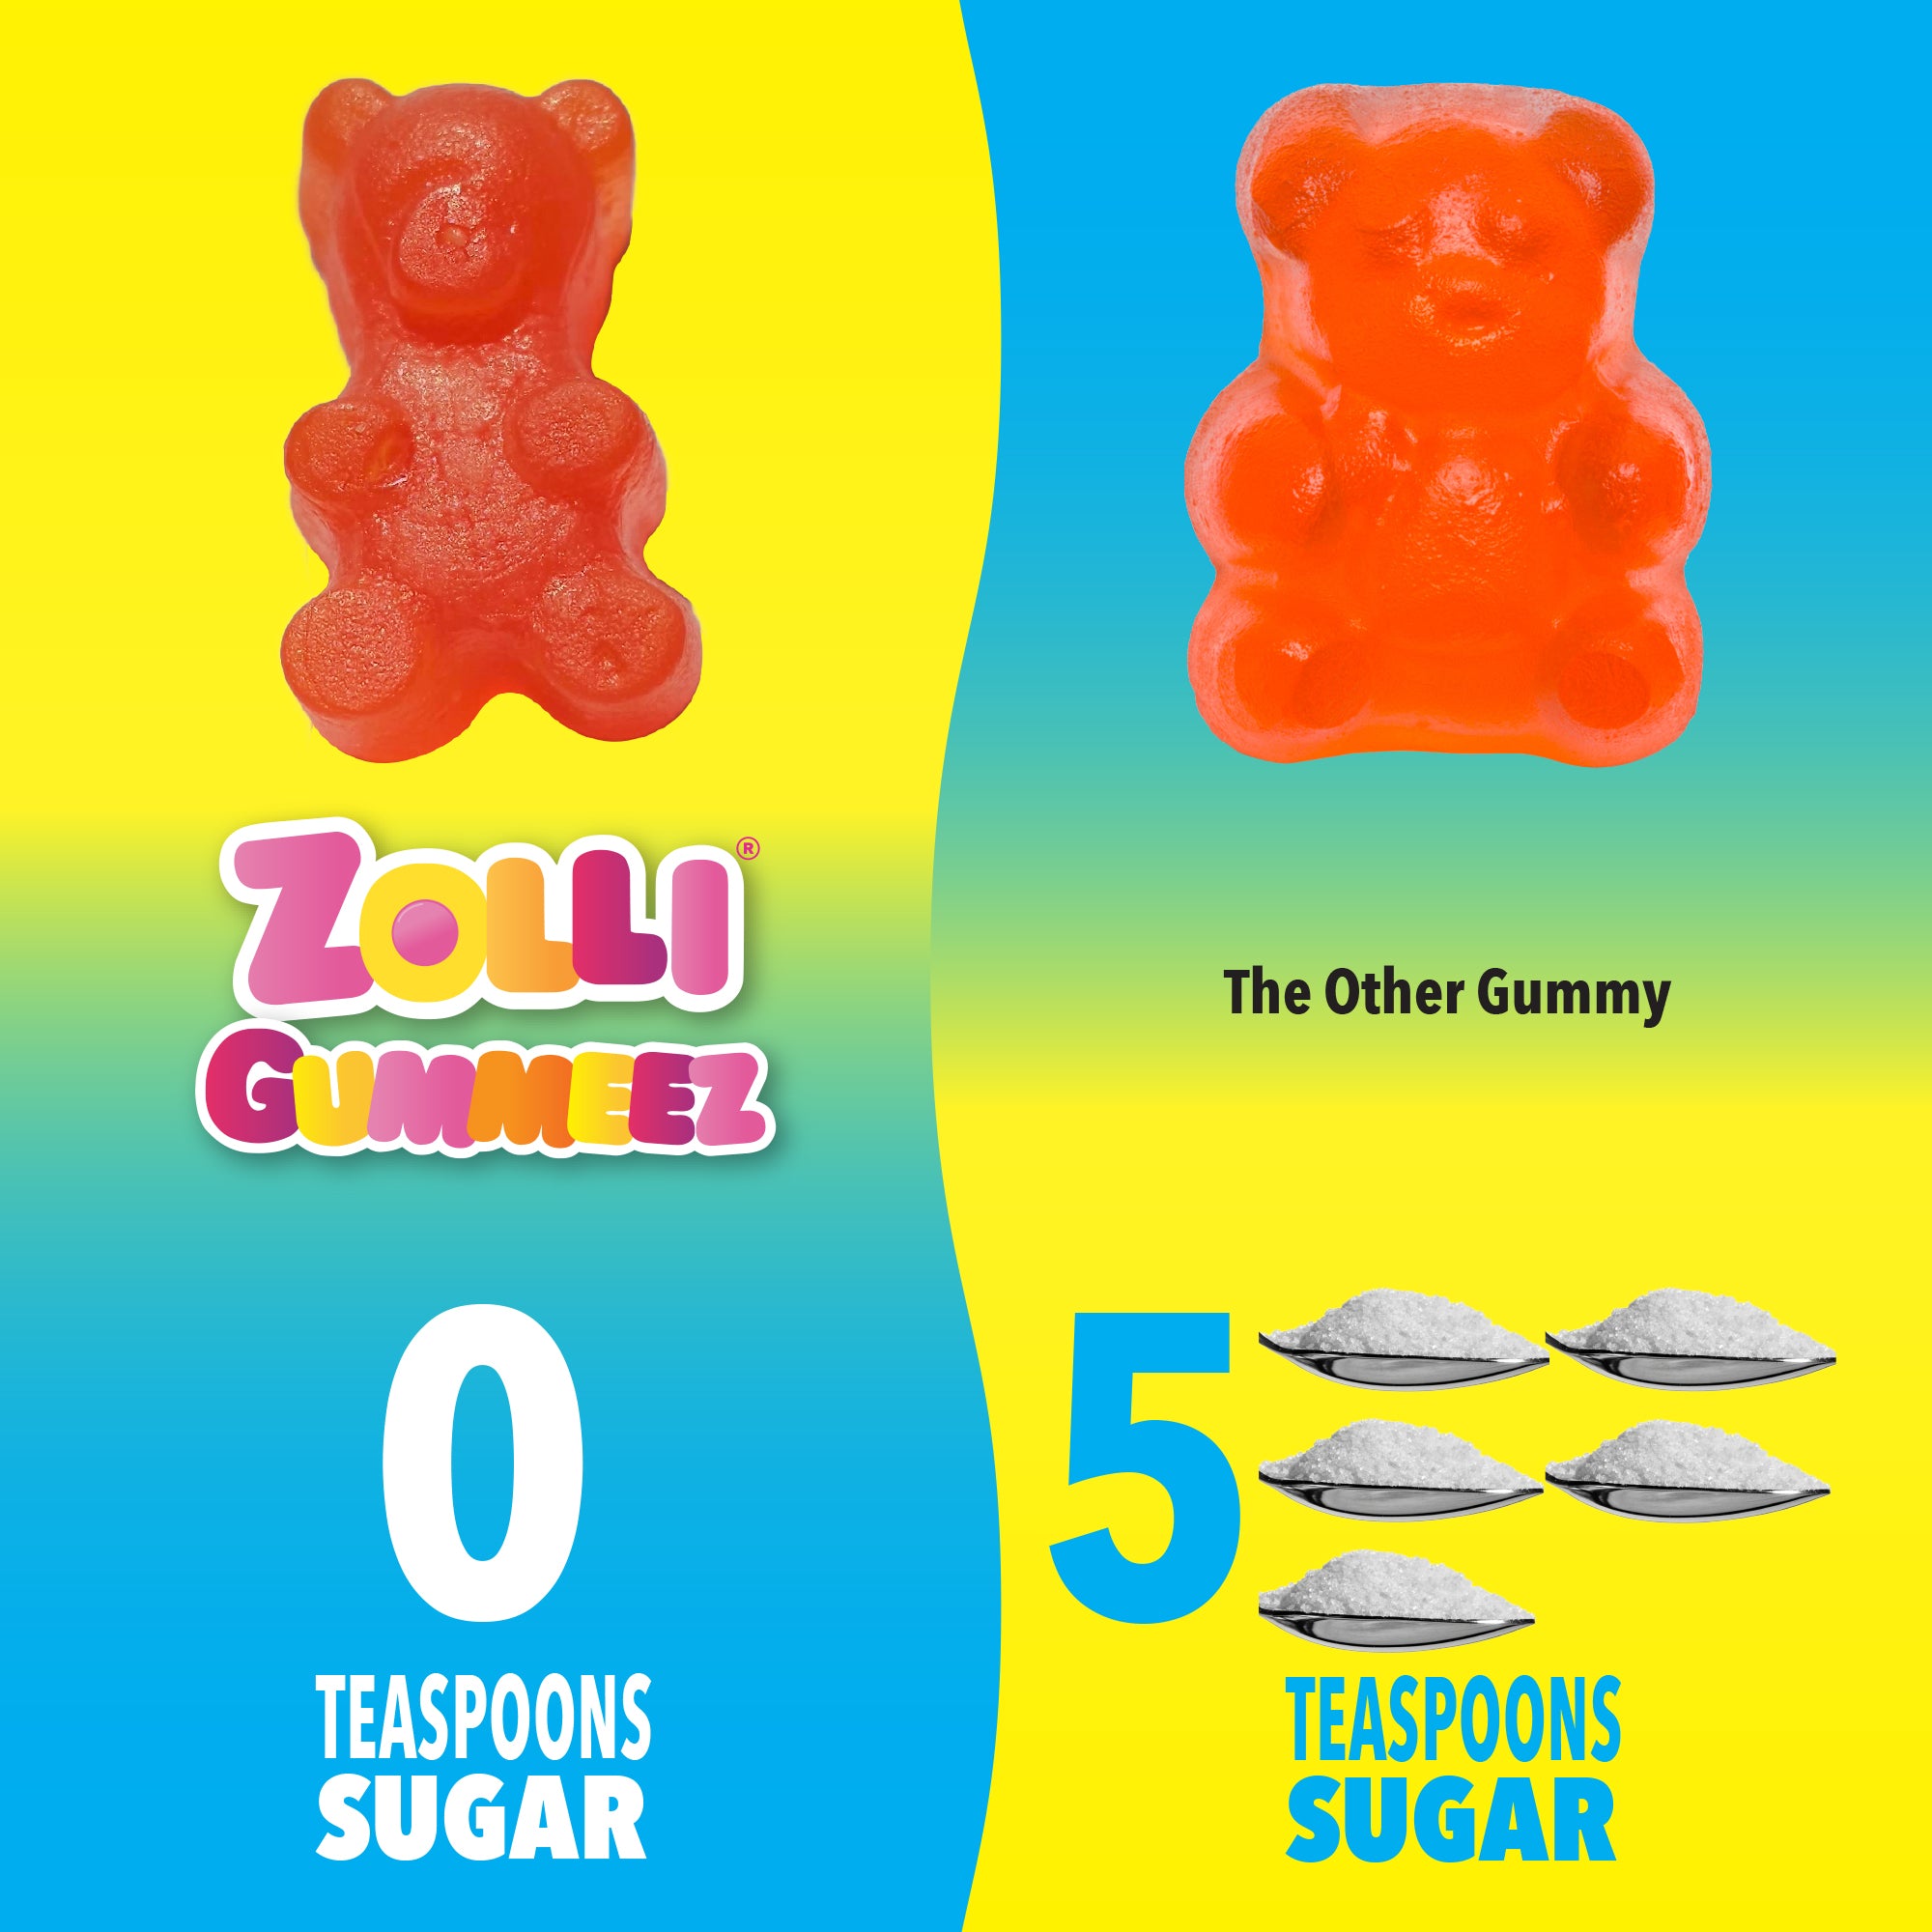 Zolli Gummeez have 0 teaspoons of sugar. Competing gummies have 5 teaspoons of sugar.